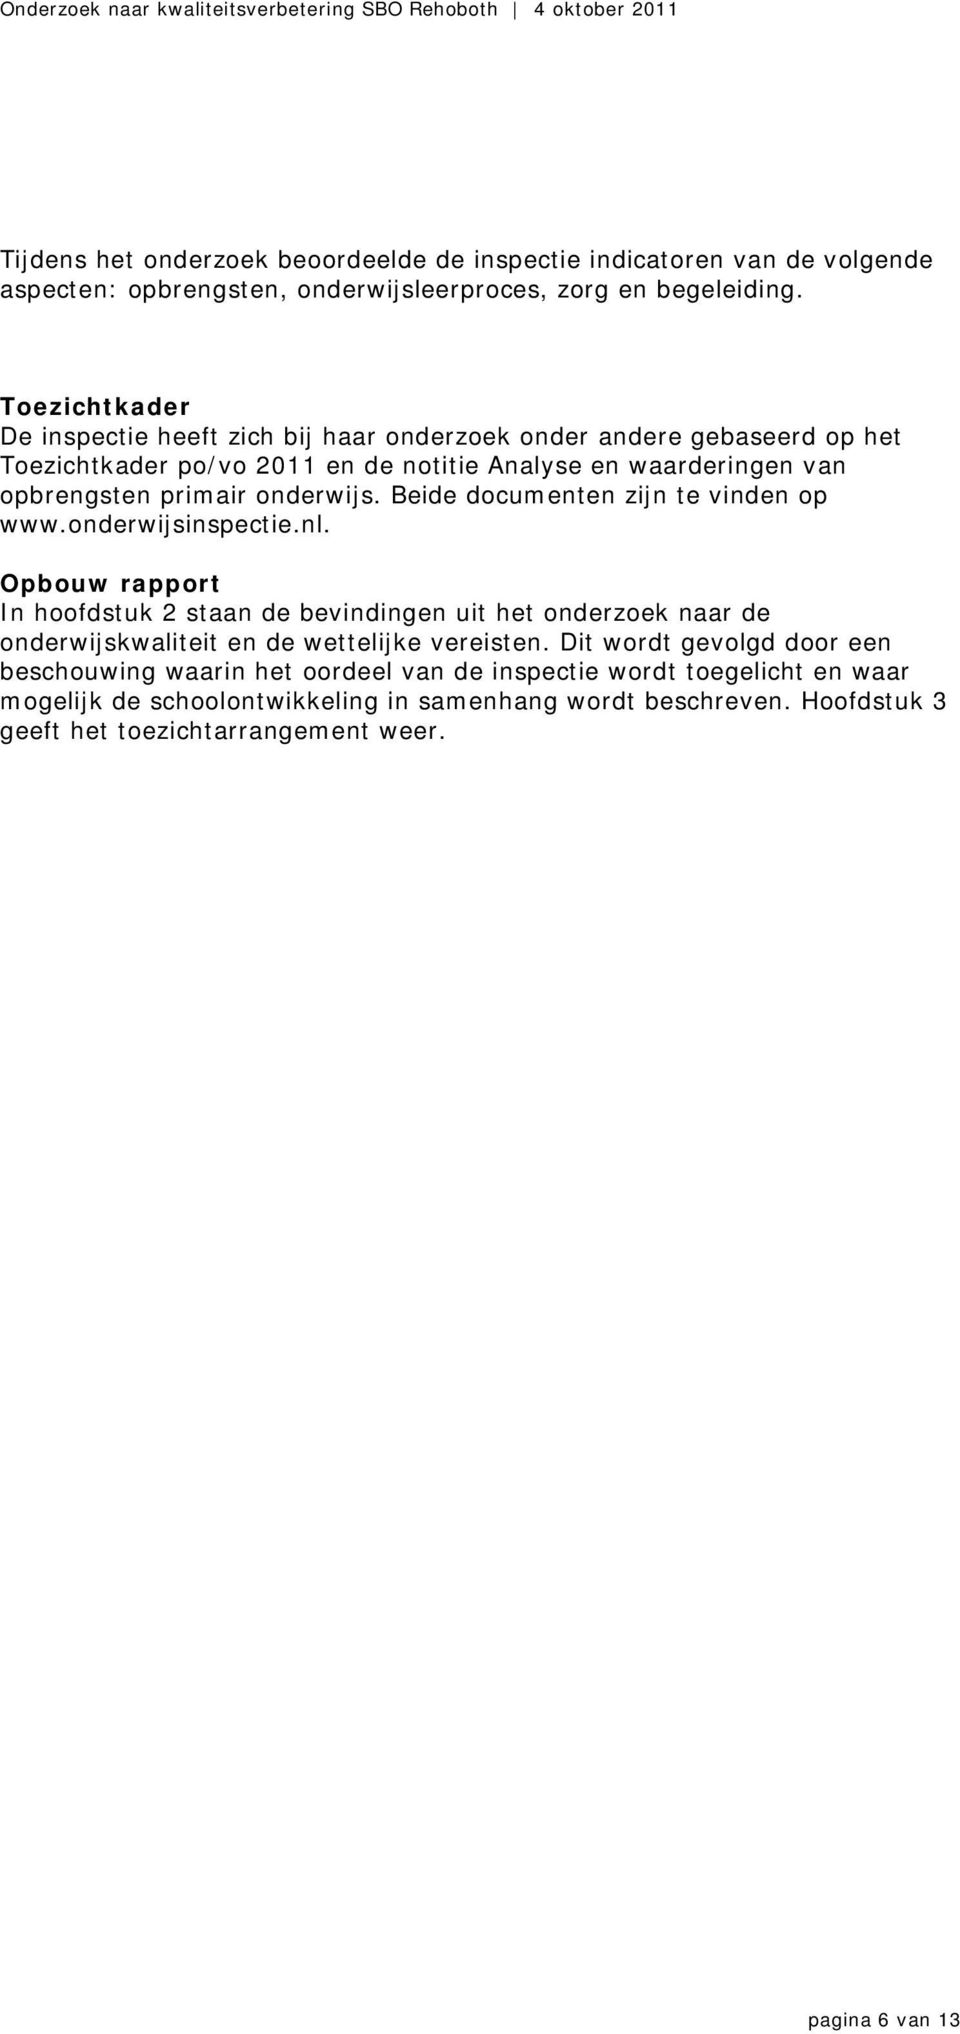 Beide documenten zijn te vinden op www.onderwijsinspectie.nl.